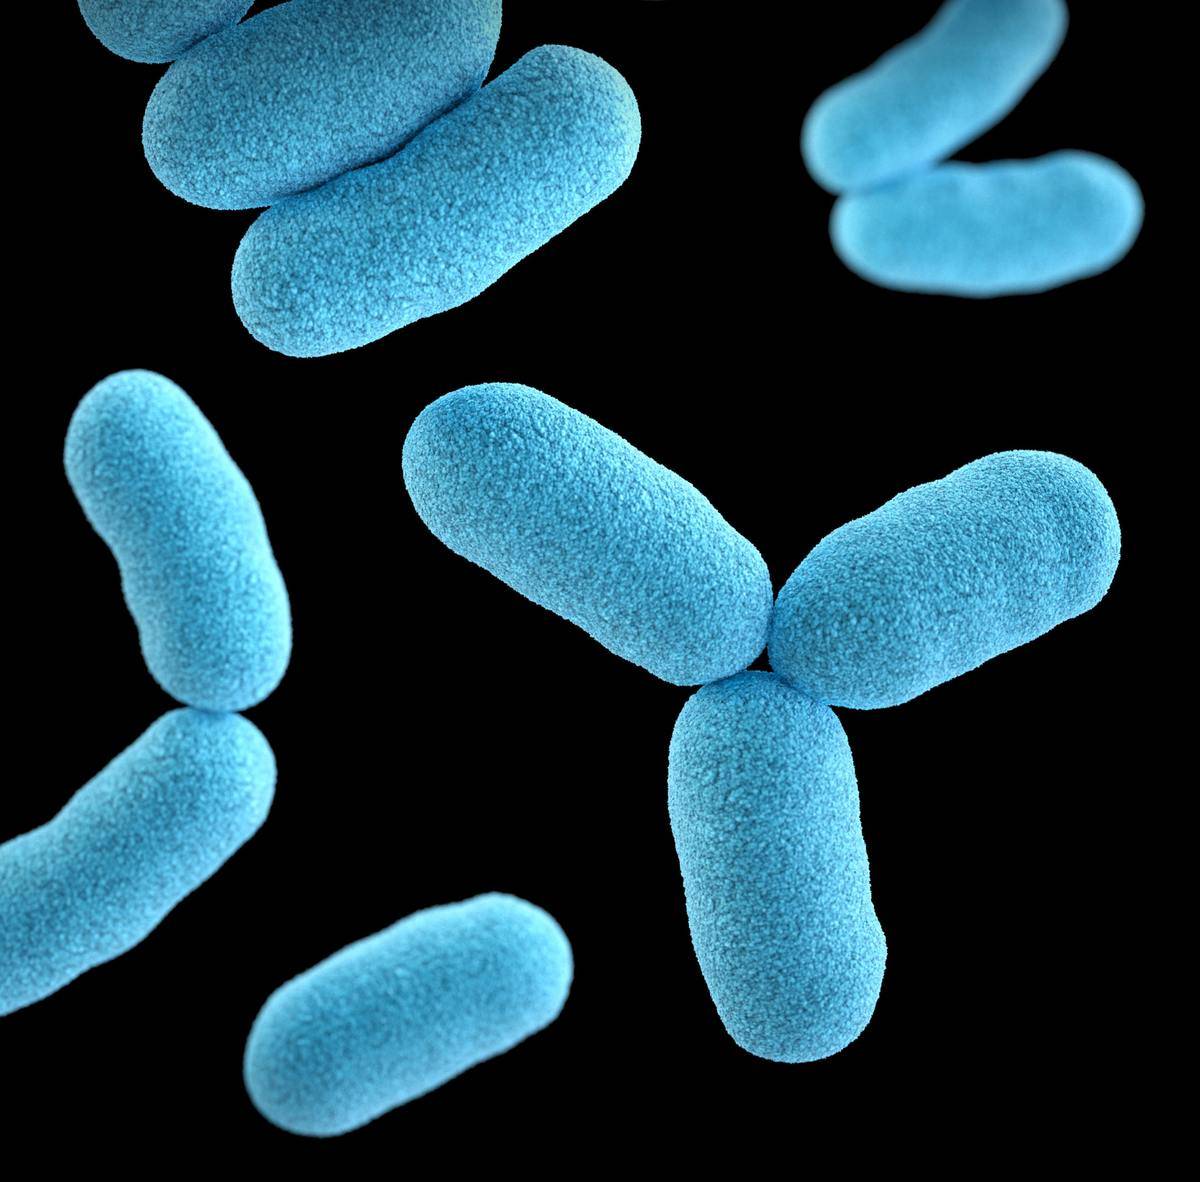 Blue bacteria closeup